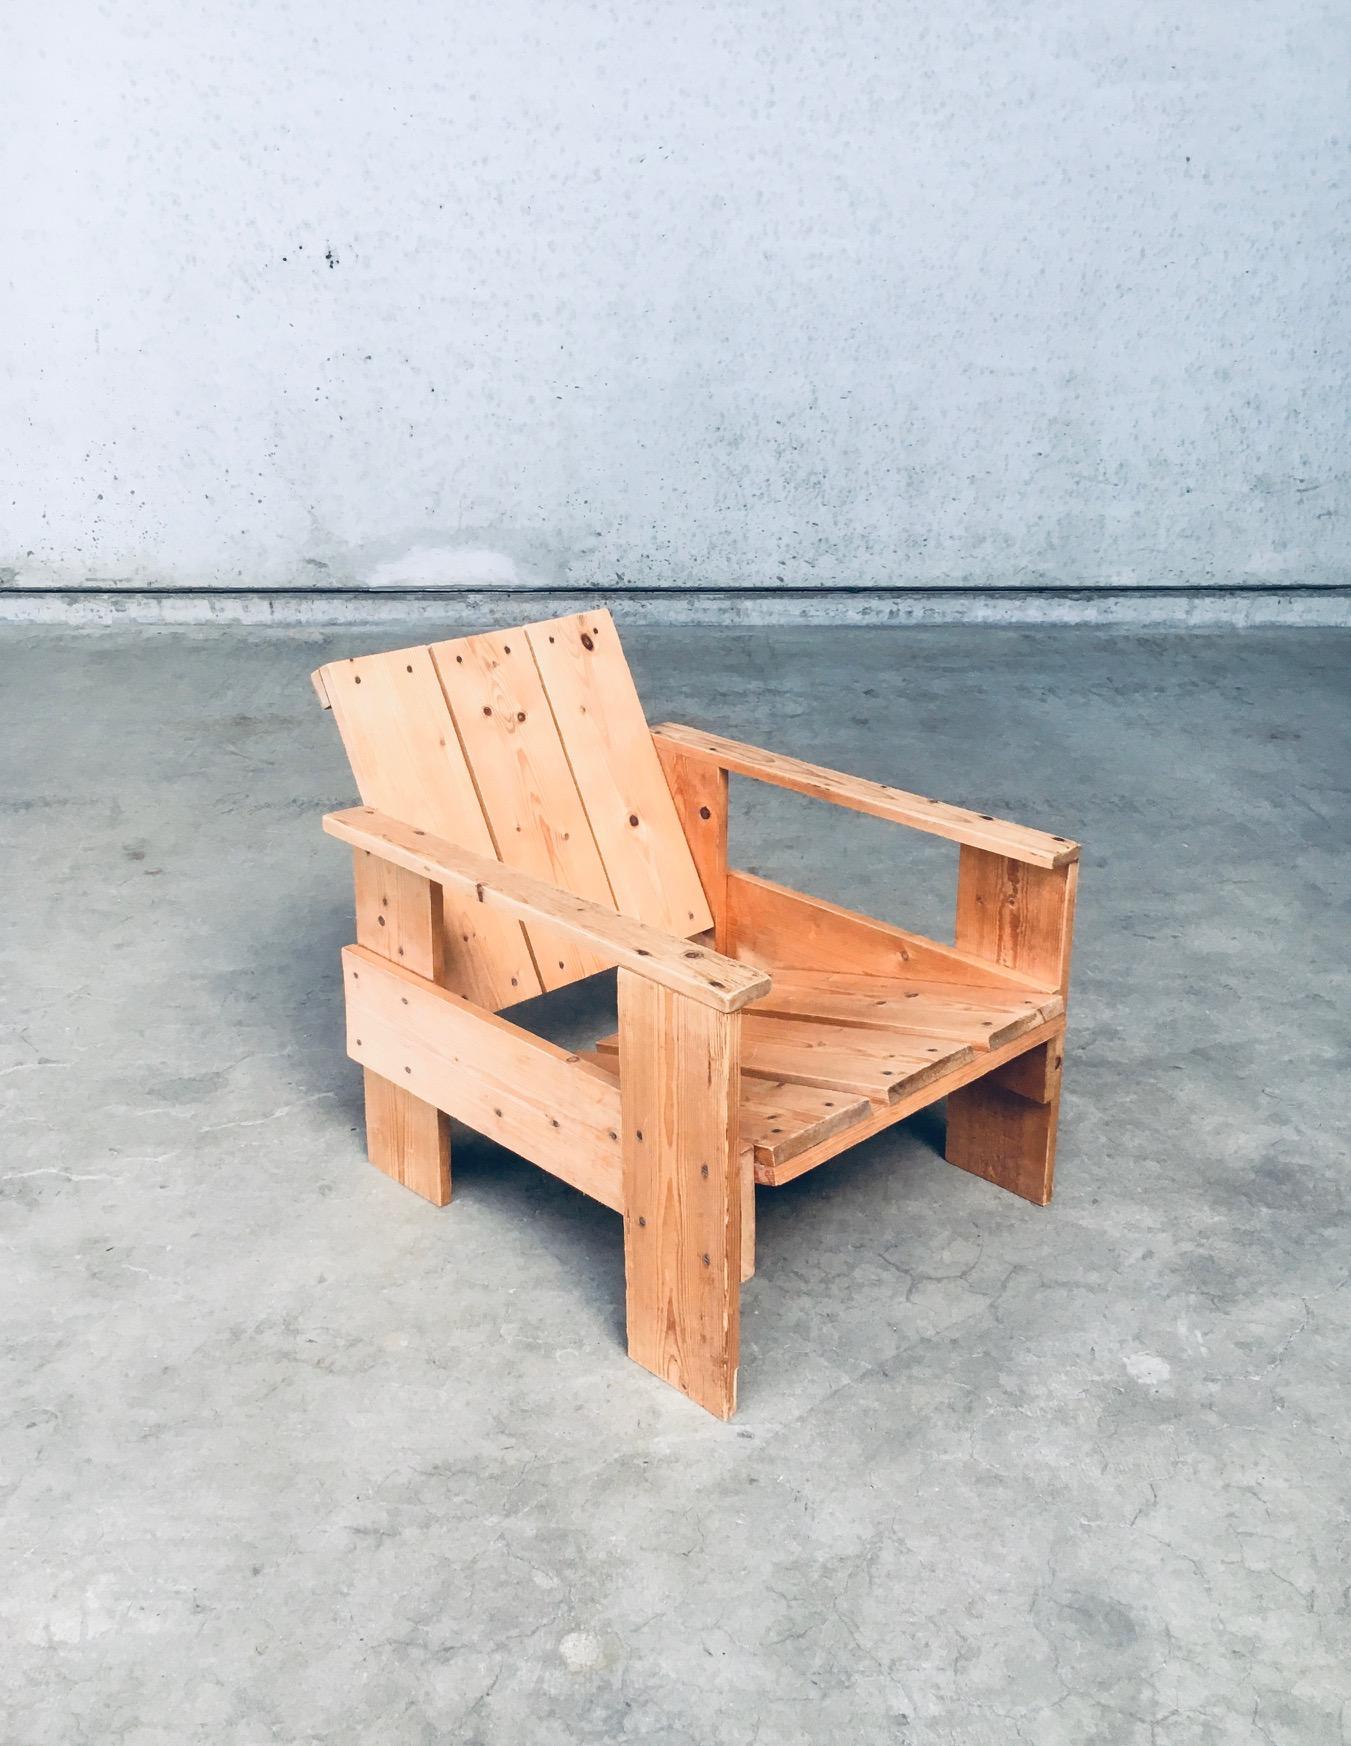 Vintage De Stijl Movement Dutch Design Pine Crate chair by Gerrit Rietveld. Fabriqué aux Pays-Bas, vers 1960. Chaise de salon / accoudoir en pin massif. Cette chaise témoigne de l'approche avant-gardiste de Rietveld en matière de conception de